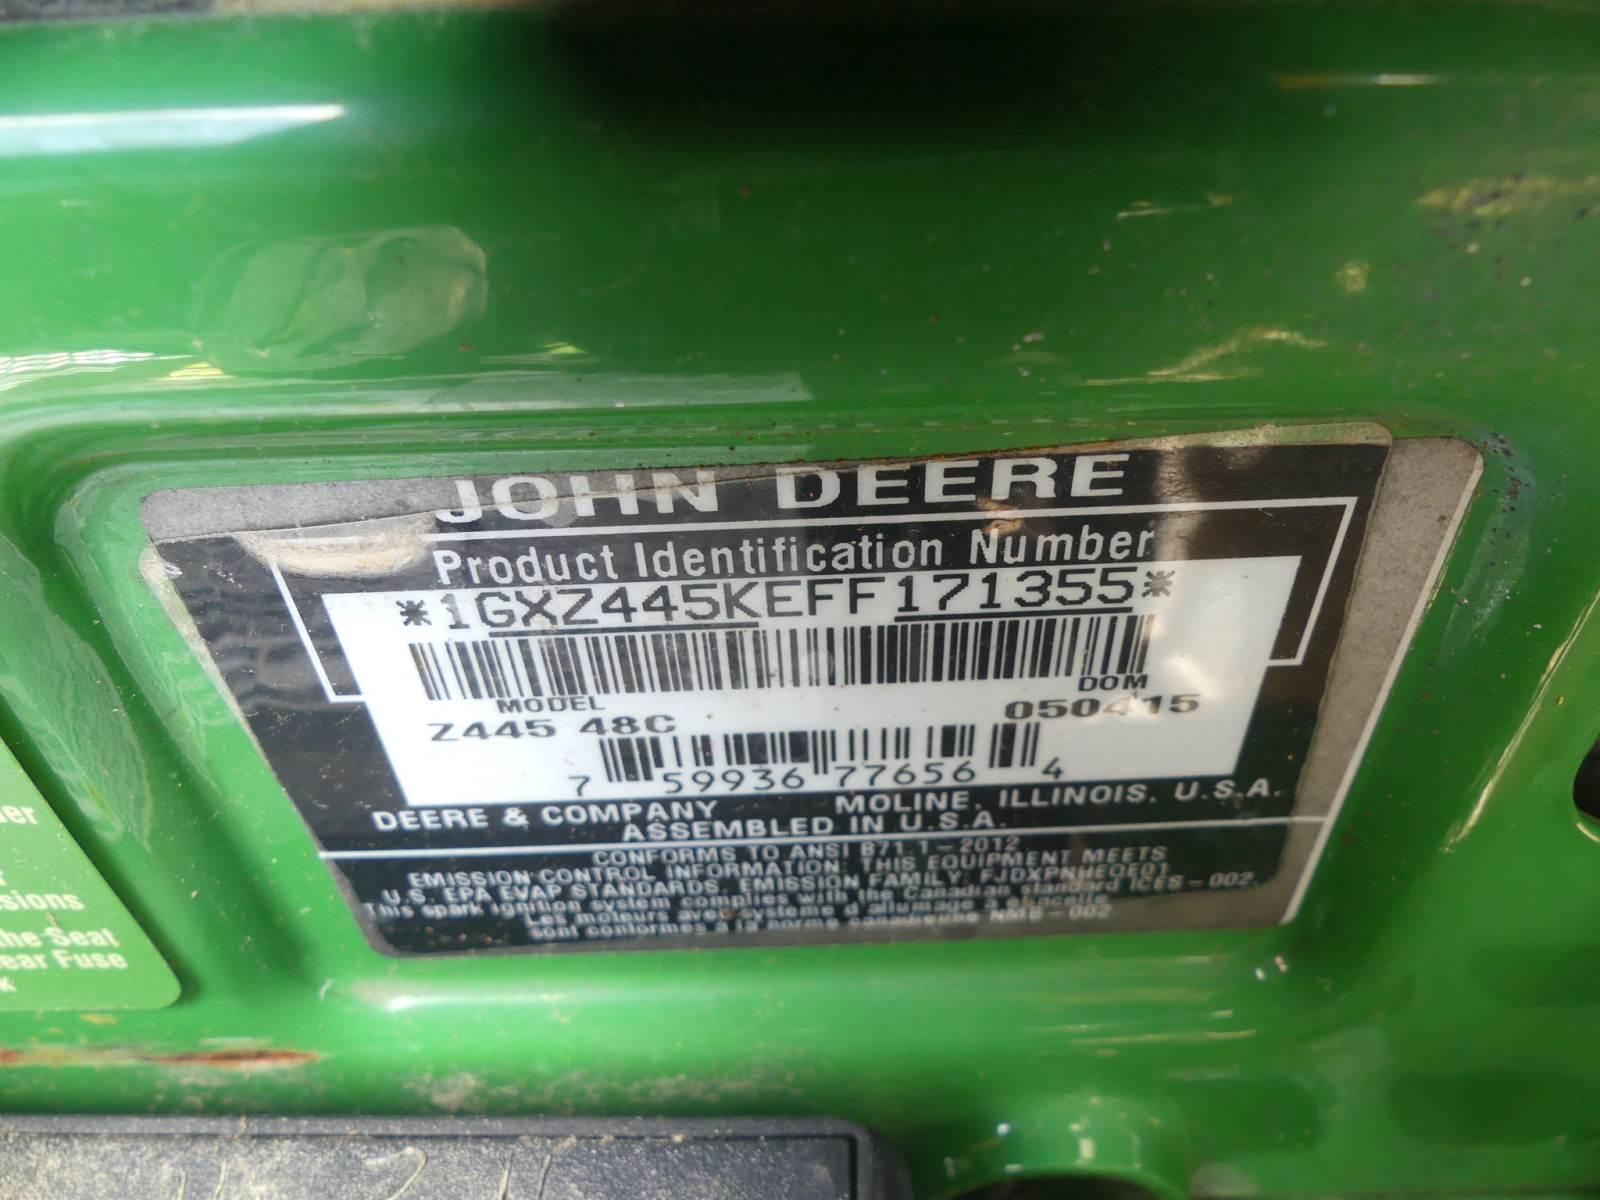 John Deere Z445 Zero-turn Mower, s/n 1GXZ445KEFF171355: Gas Eng., 48" Deck,